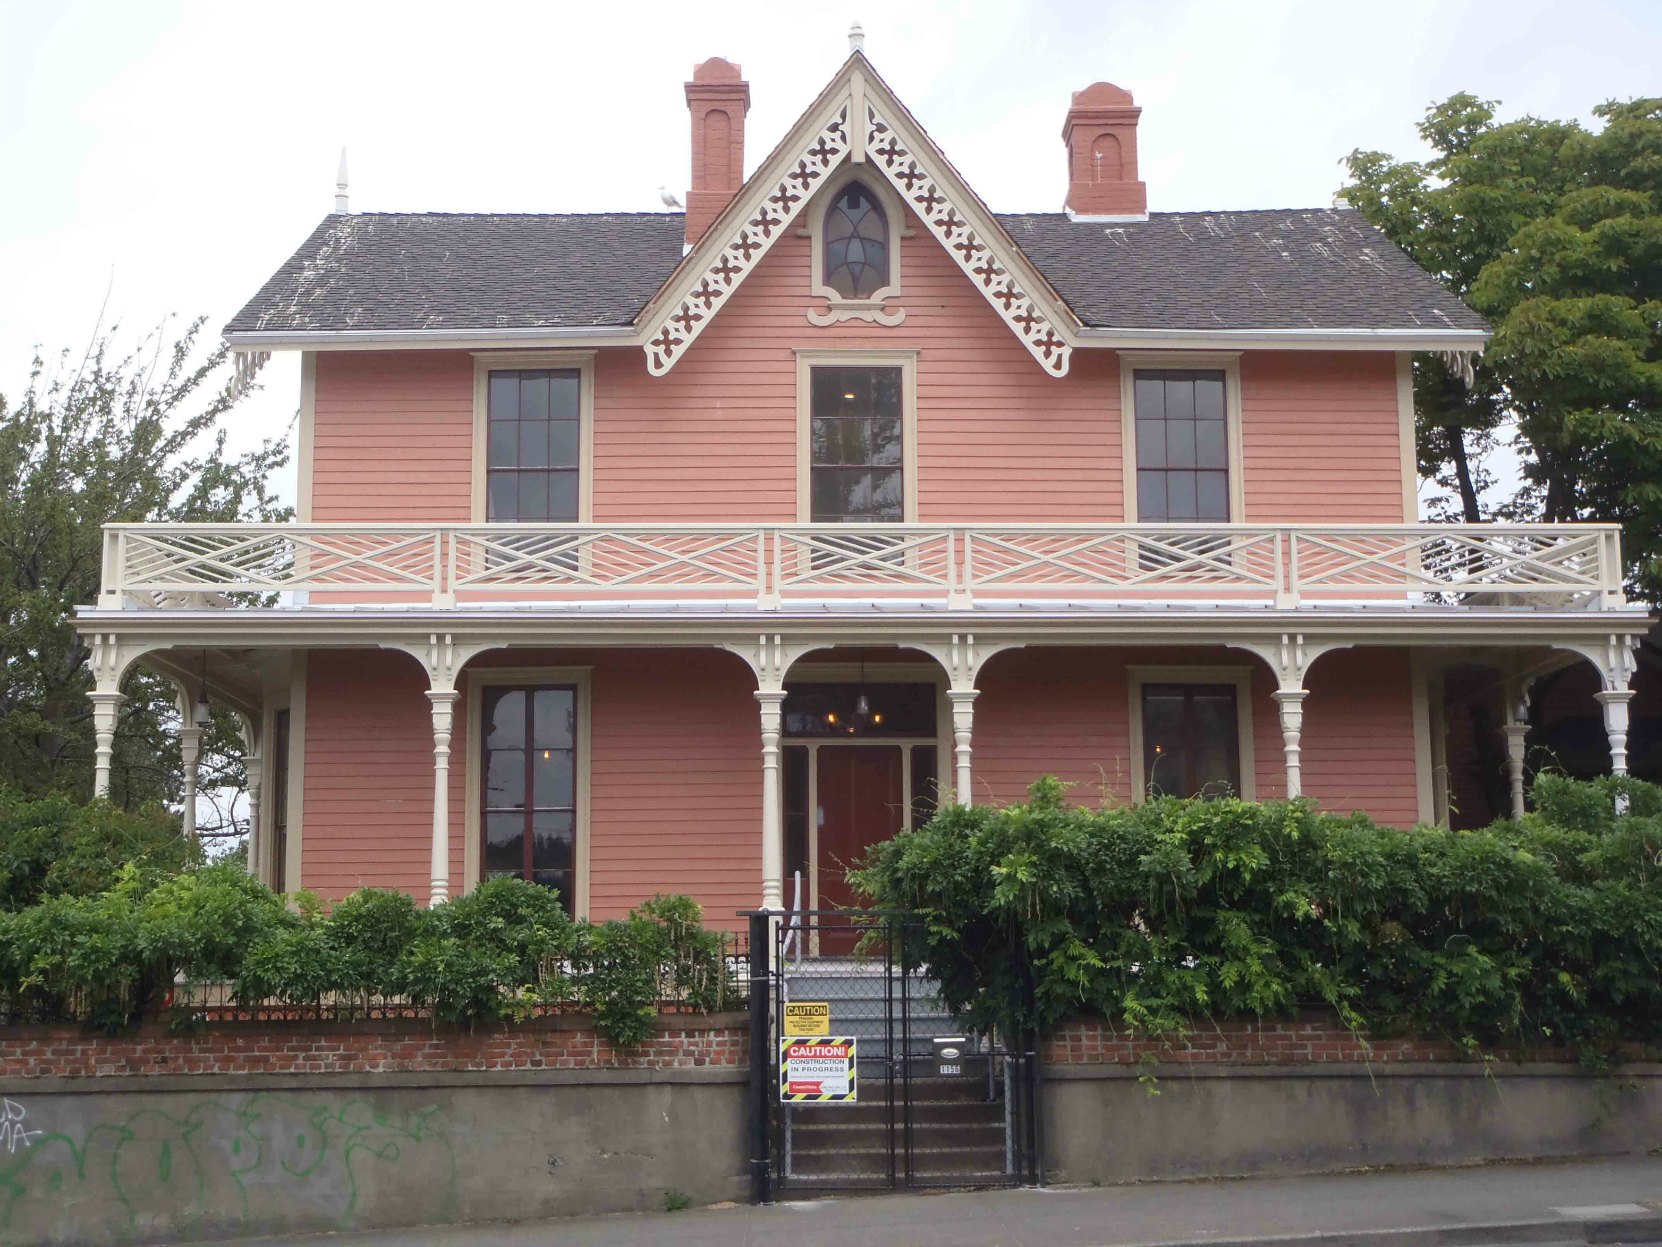 Wentworth Villa, 1156 Fort Street, was built in 1863.